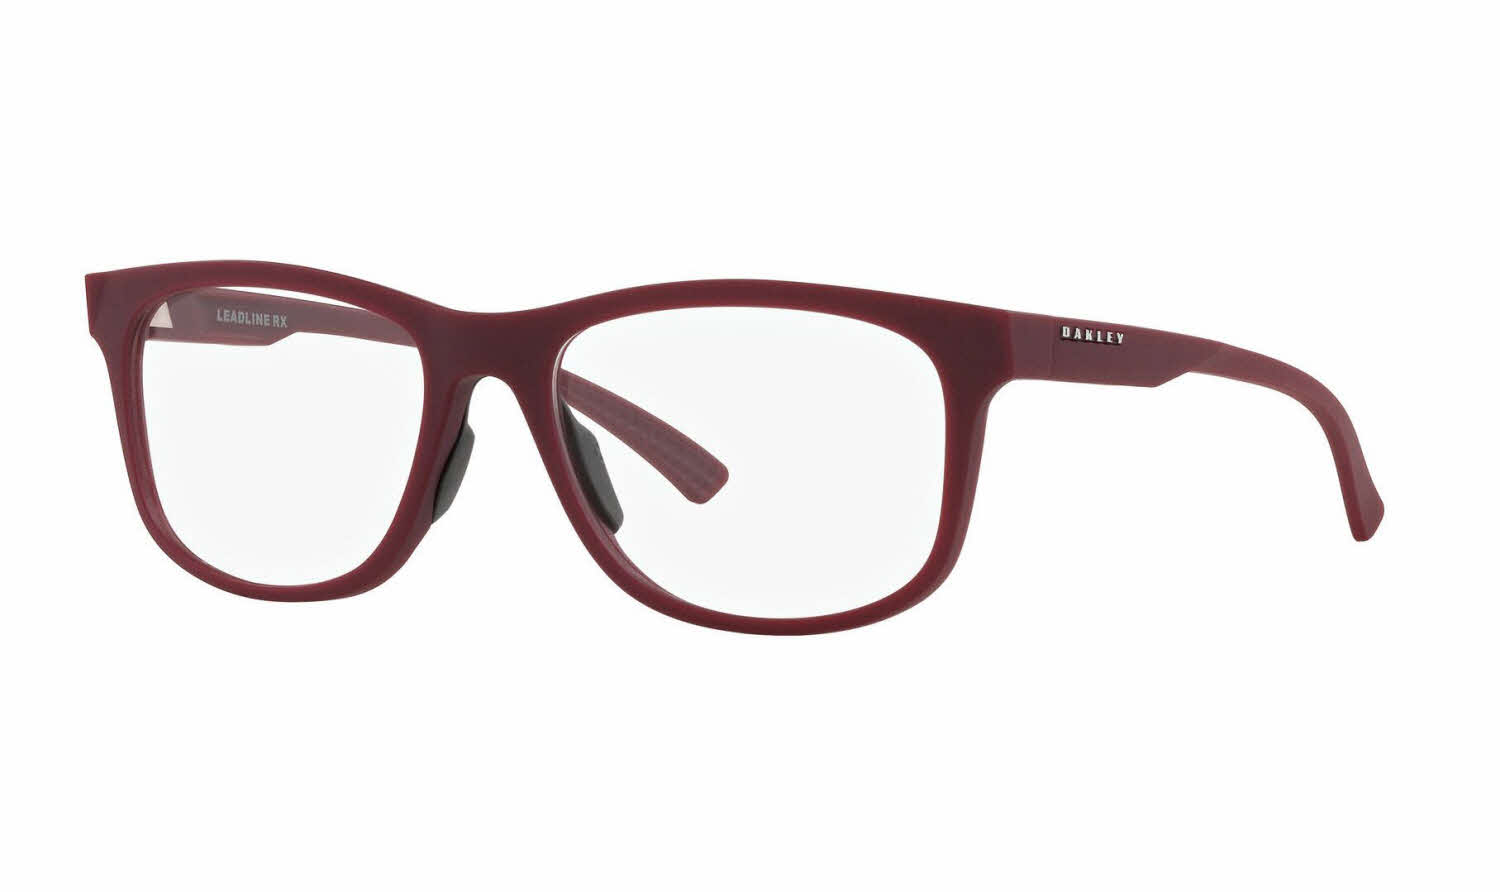 Oakley Leadline RX Eyeglasses